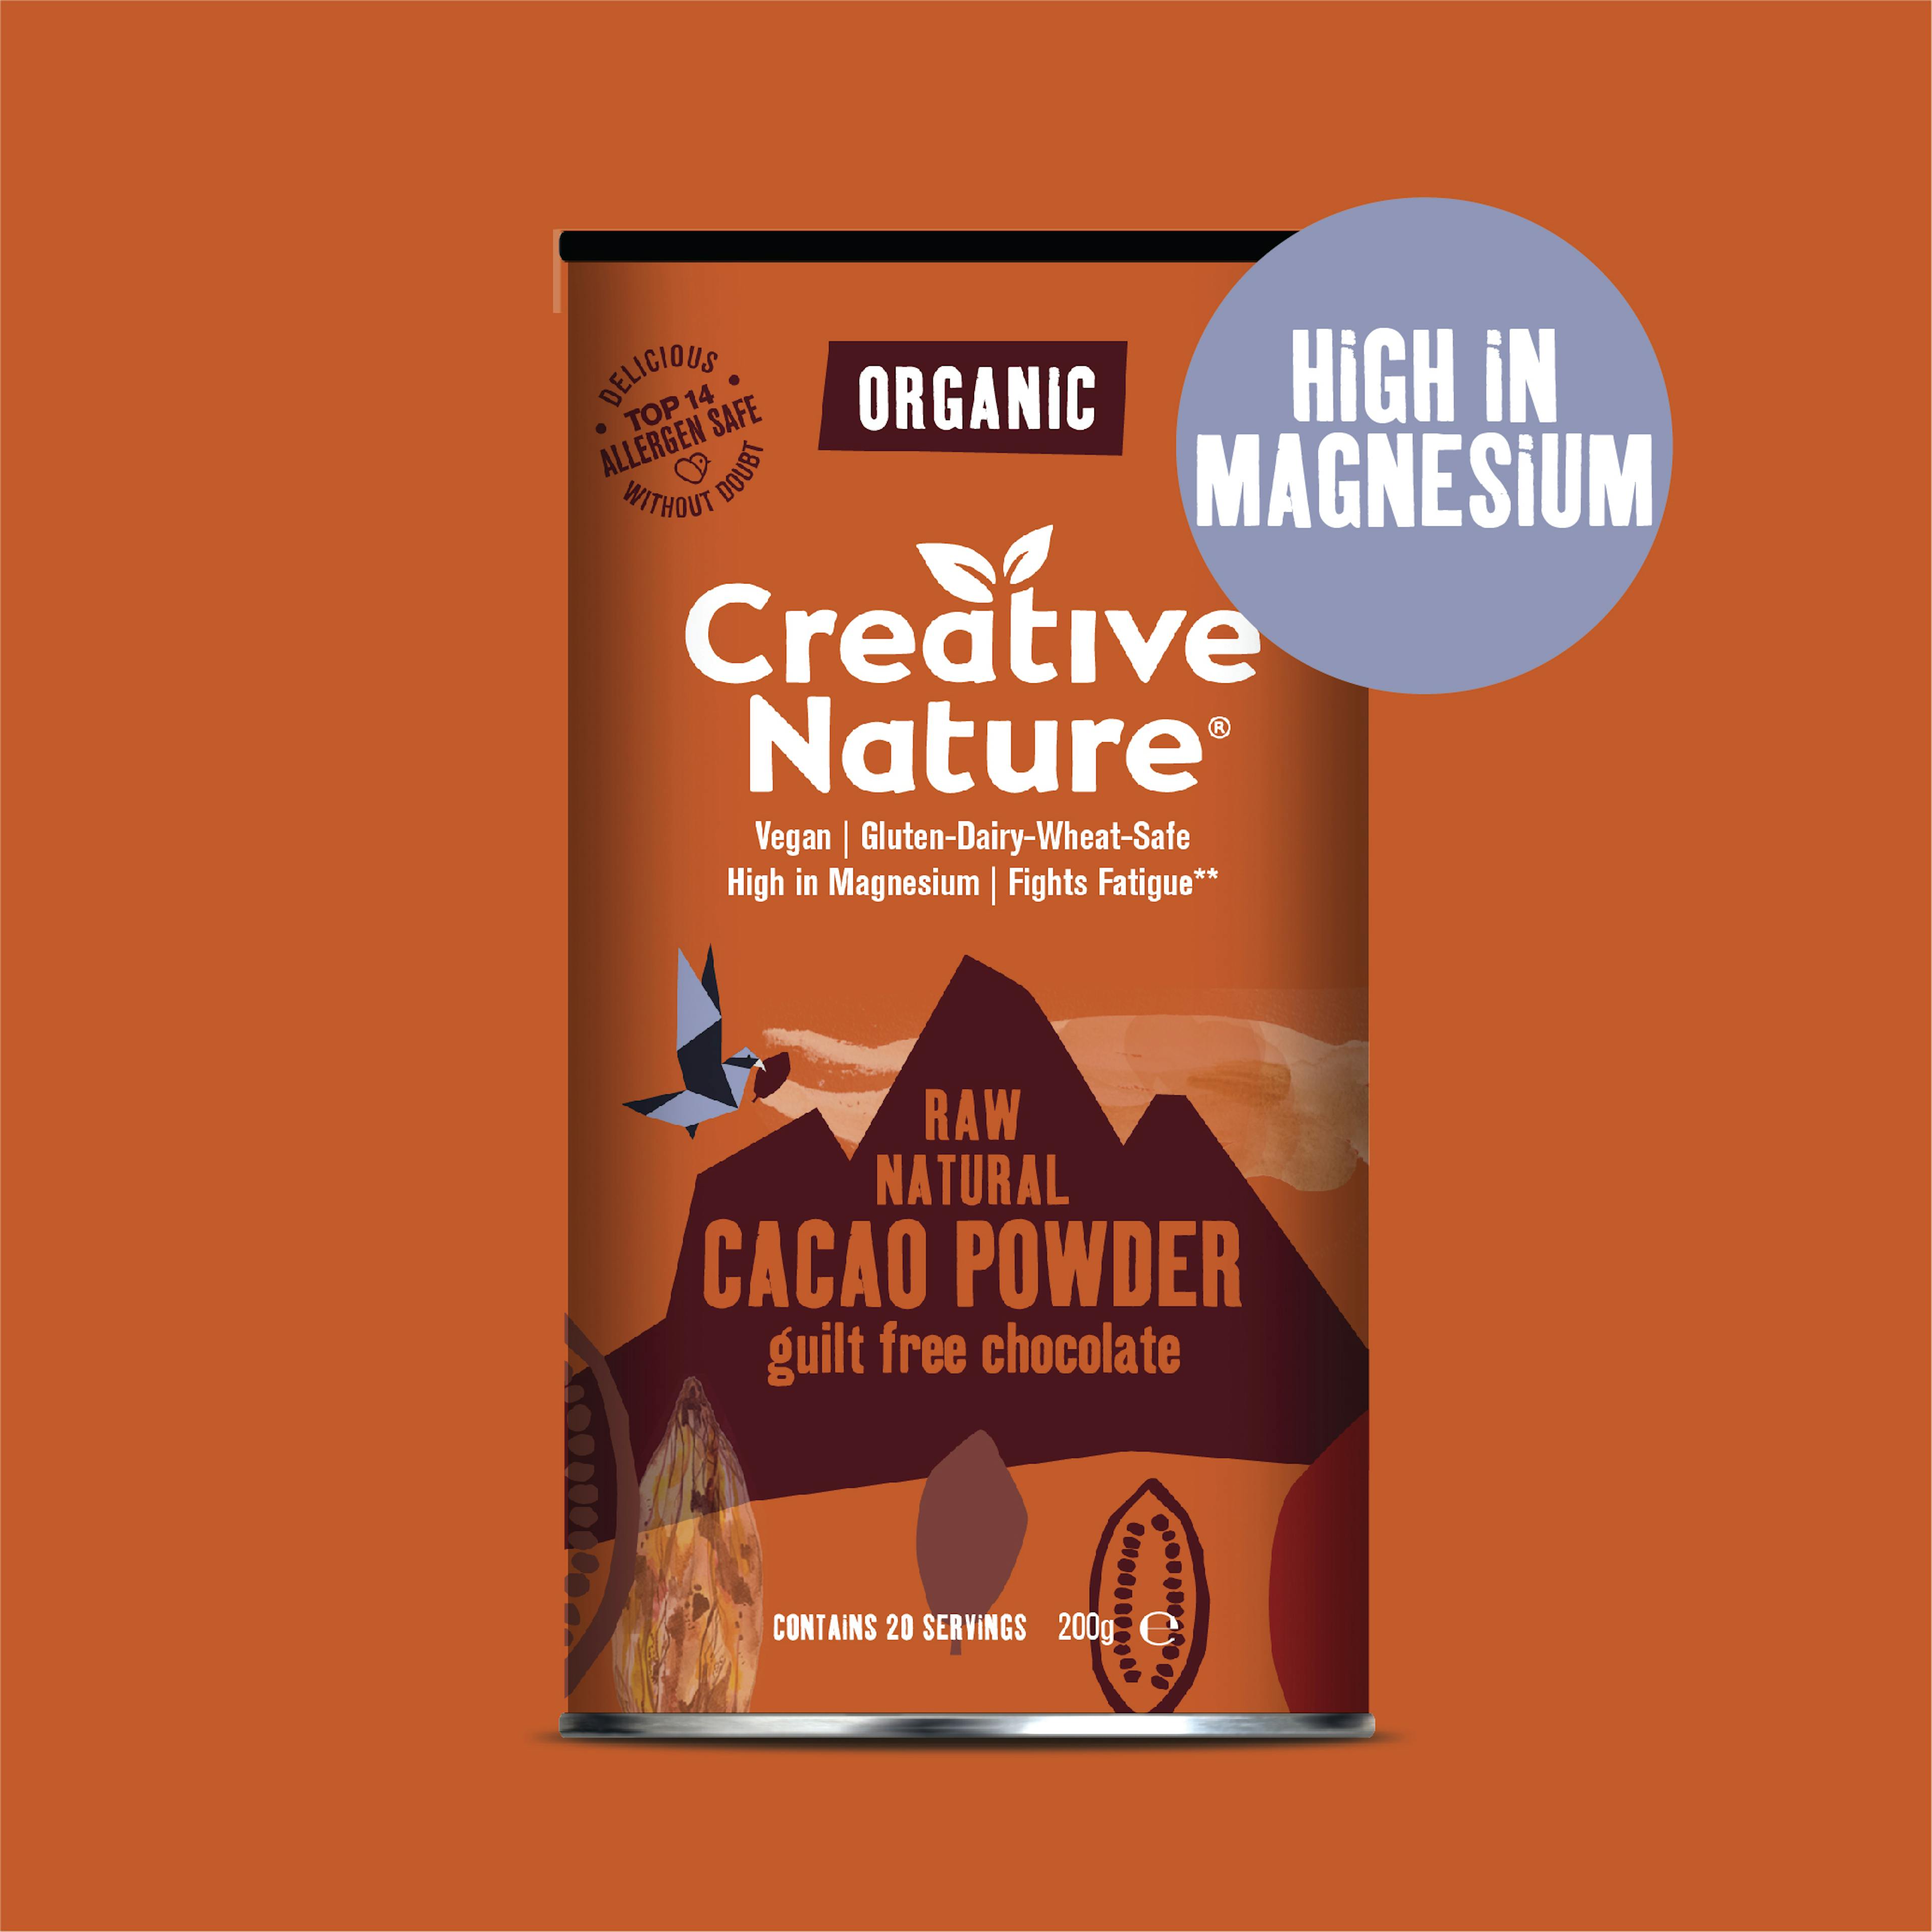 100% Organic Raw Cacao Powder | 100g, 200g, or 600g